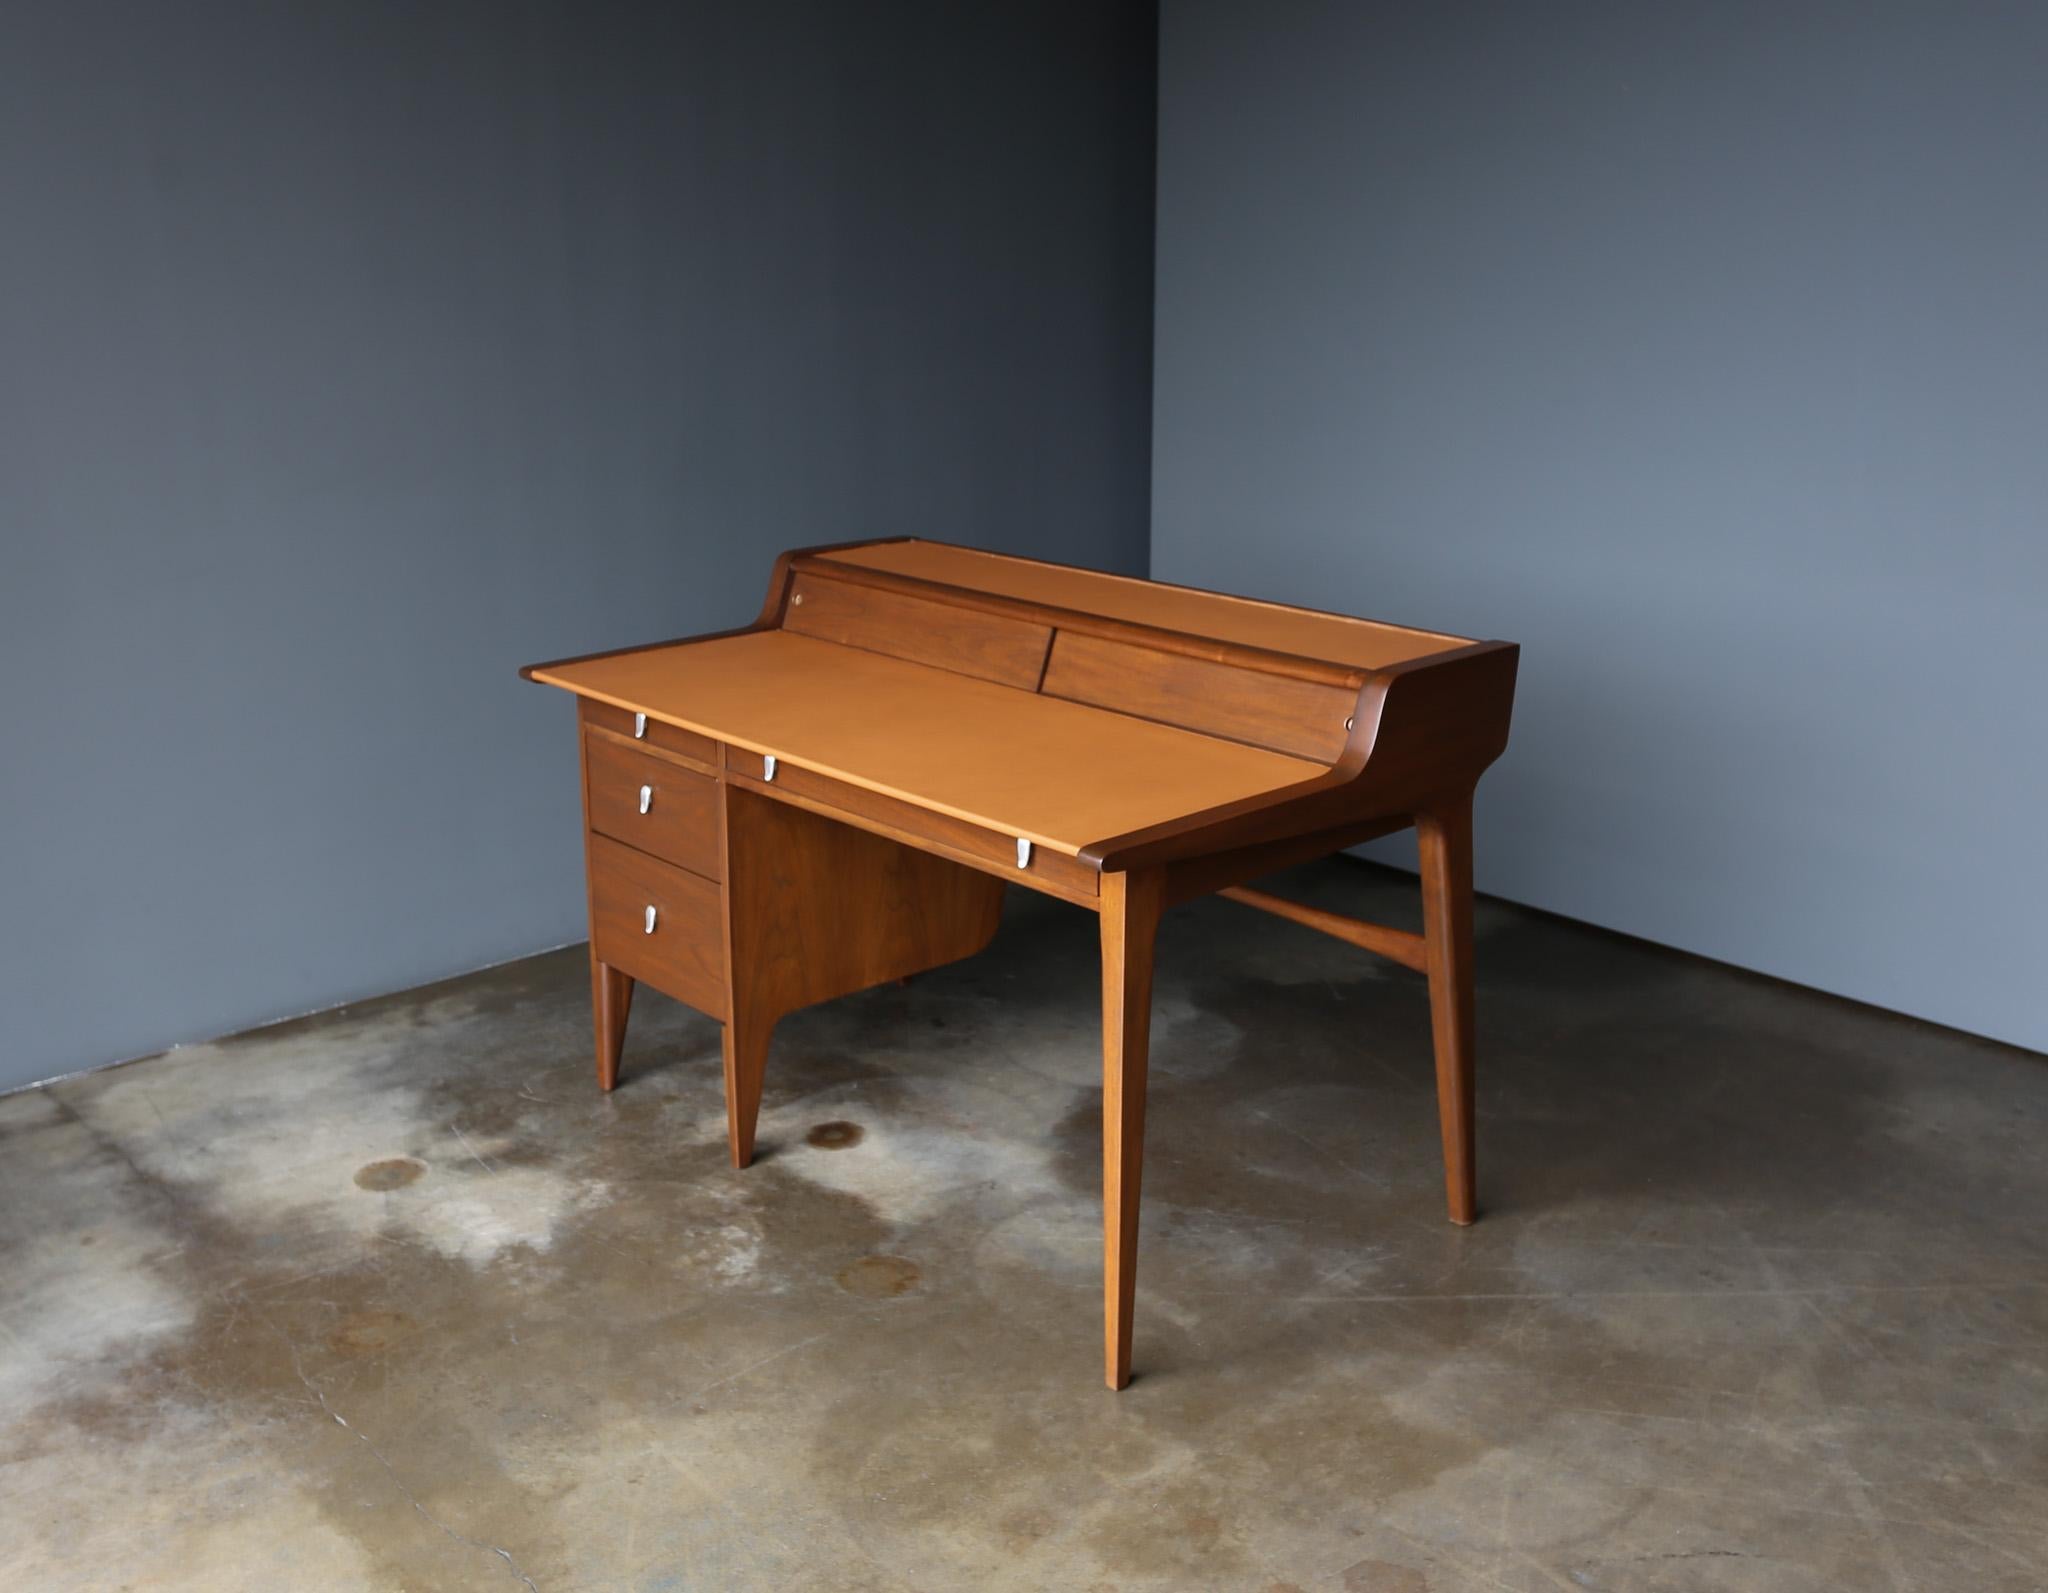 Bureau à plateau en cuir en noyer de John Van Koert pour Drexel, c.1965.  Cette pièce a été professionnellement restaurée.